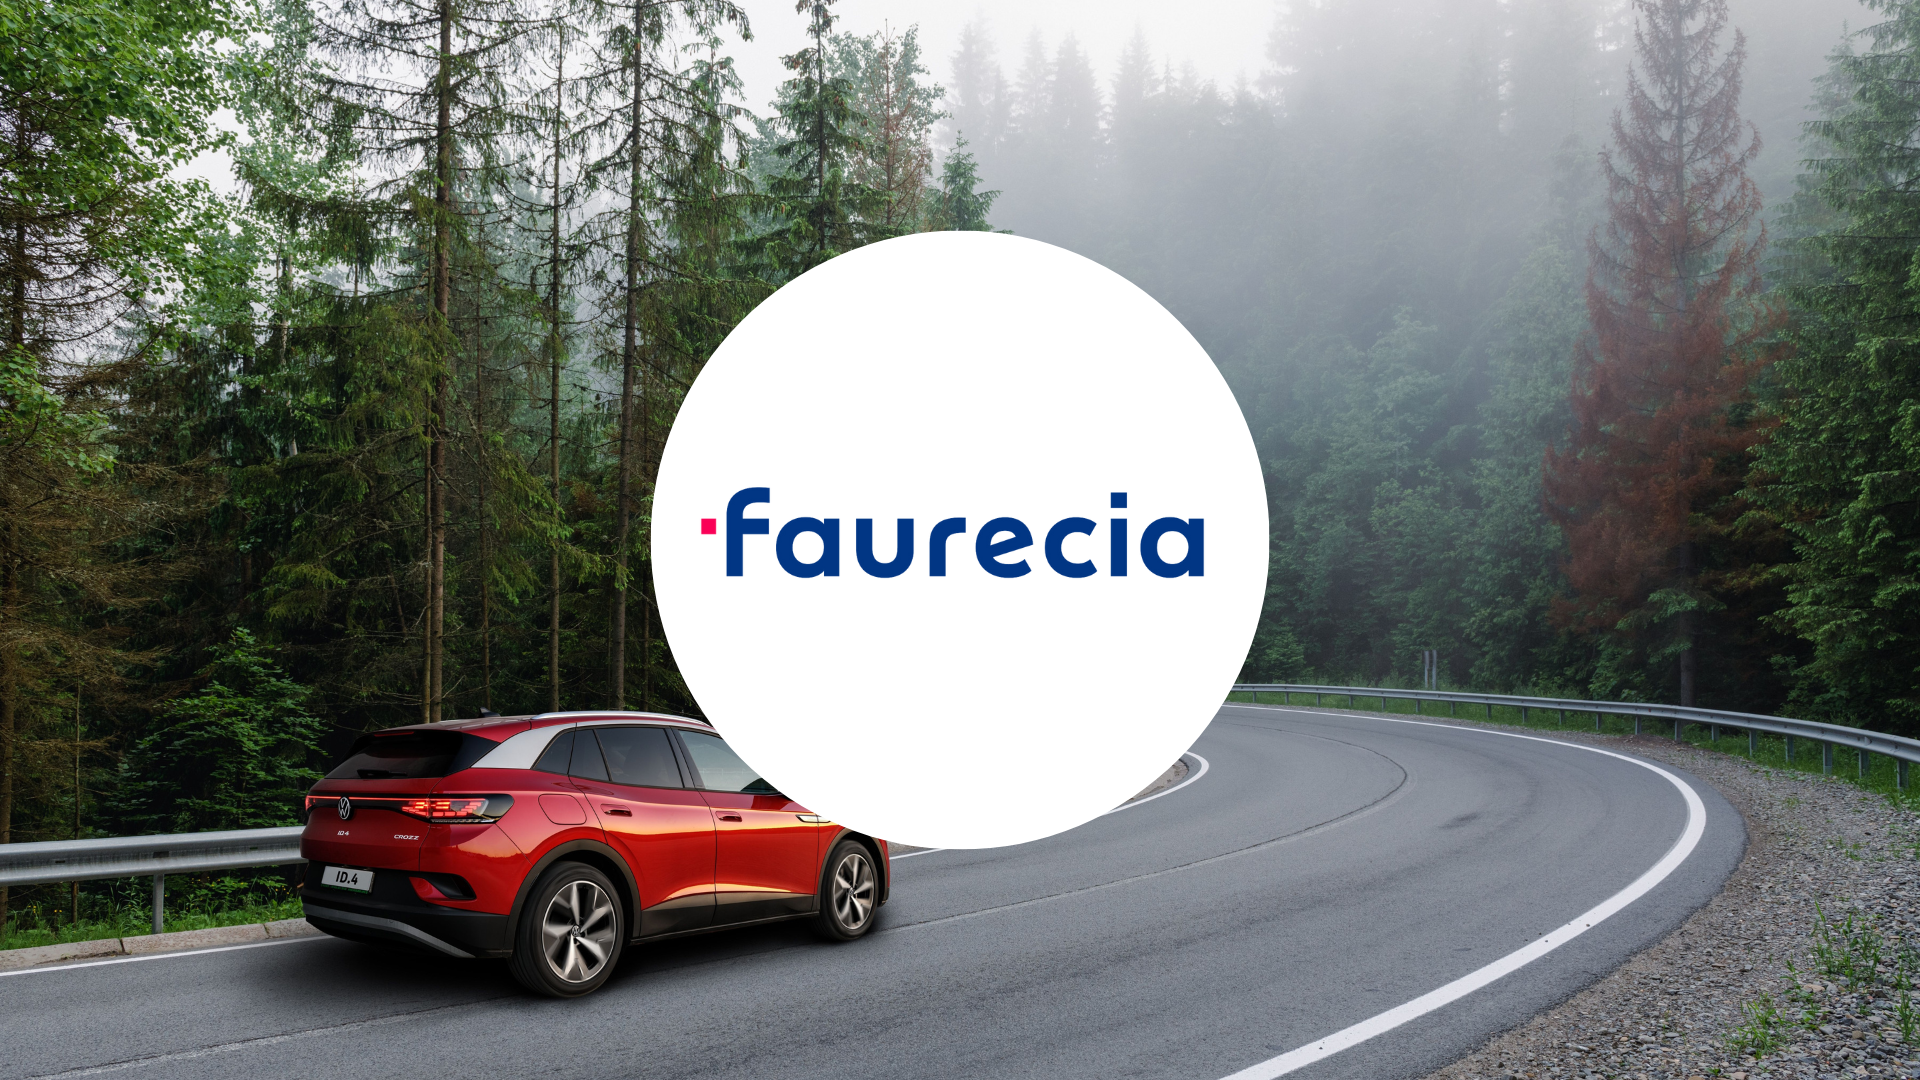 Voiture rouge qui roule sur les routes de montagne avec le logo Faurecia